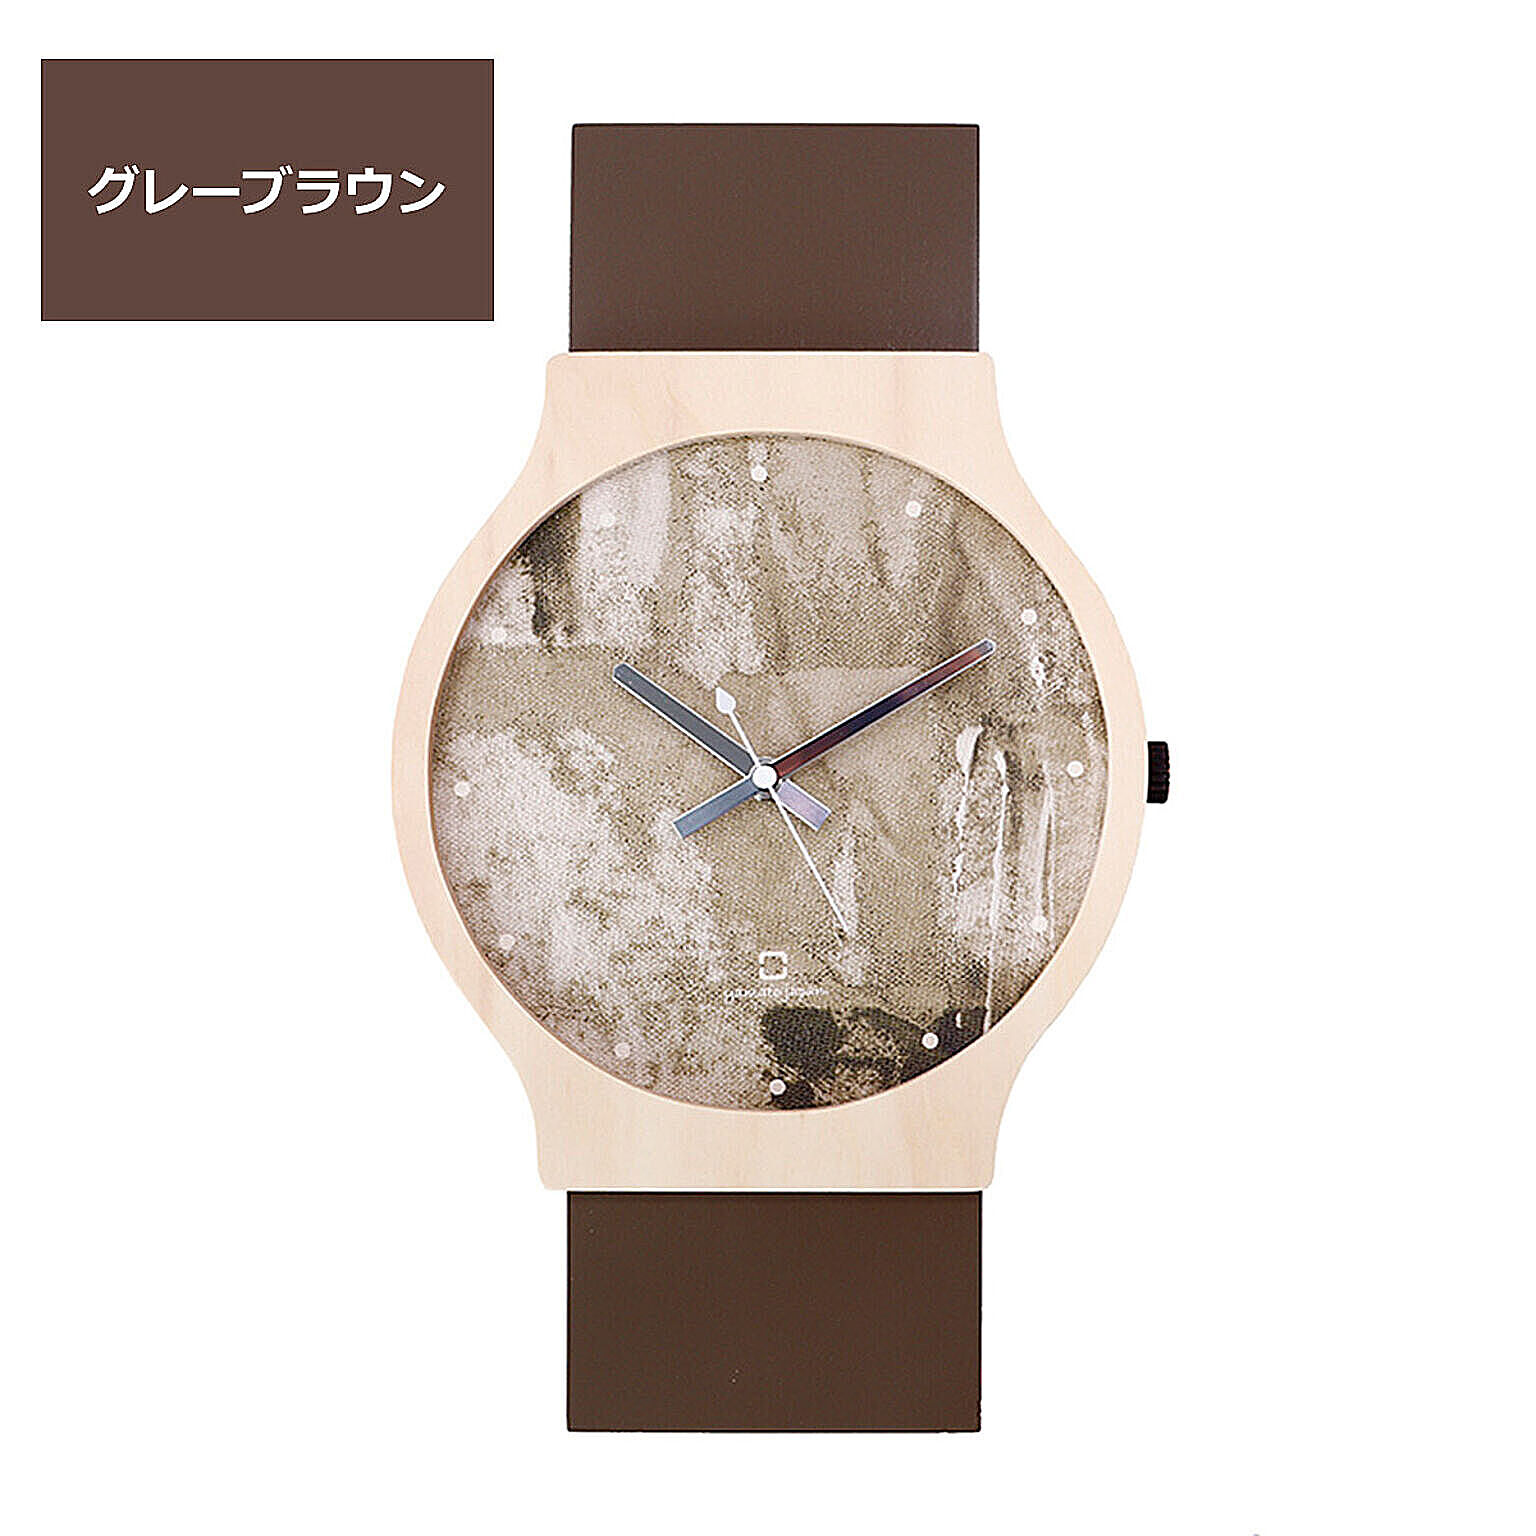 時計 壁掛け 掛け時計 おしゃれ アナログ 木製 北欧 日本製 国産 かわいい 天然木 ウッド ナチュラル painting clock ヤマト工芸 パステルカラー 可愛い 腕時計モチーフ 子供部屋 